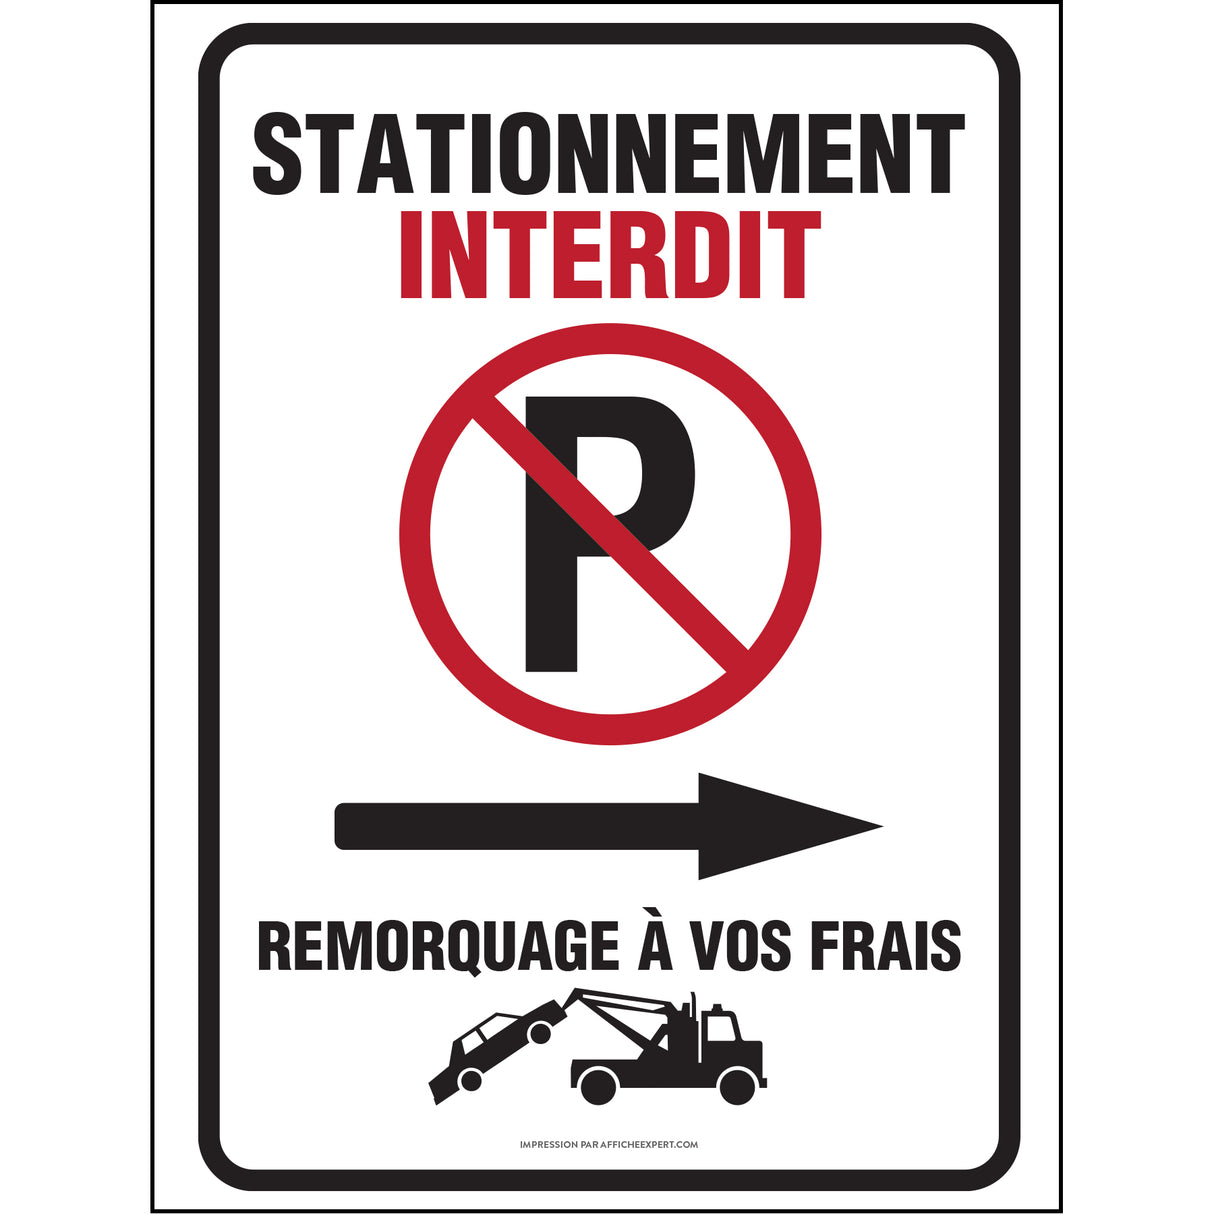 Stationnement interdit - Remorquage à vos frais (Flèche droite)